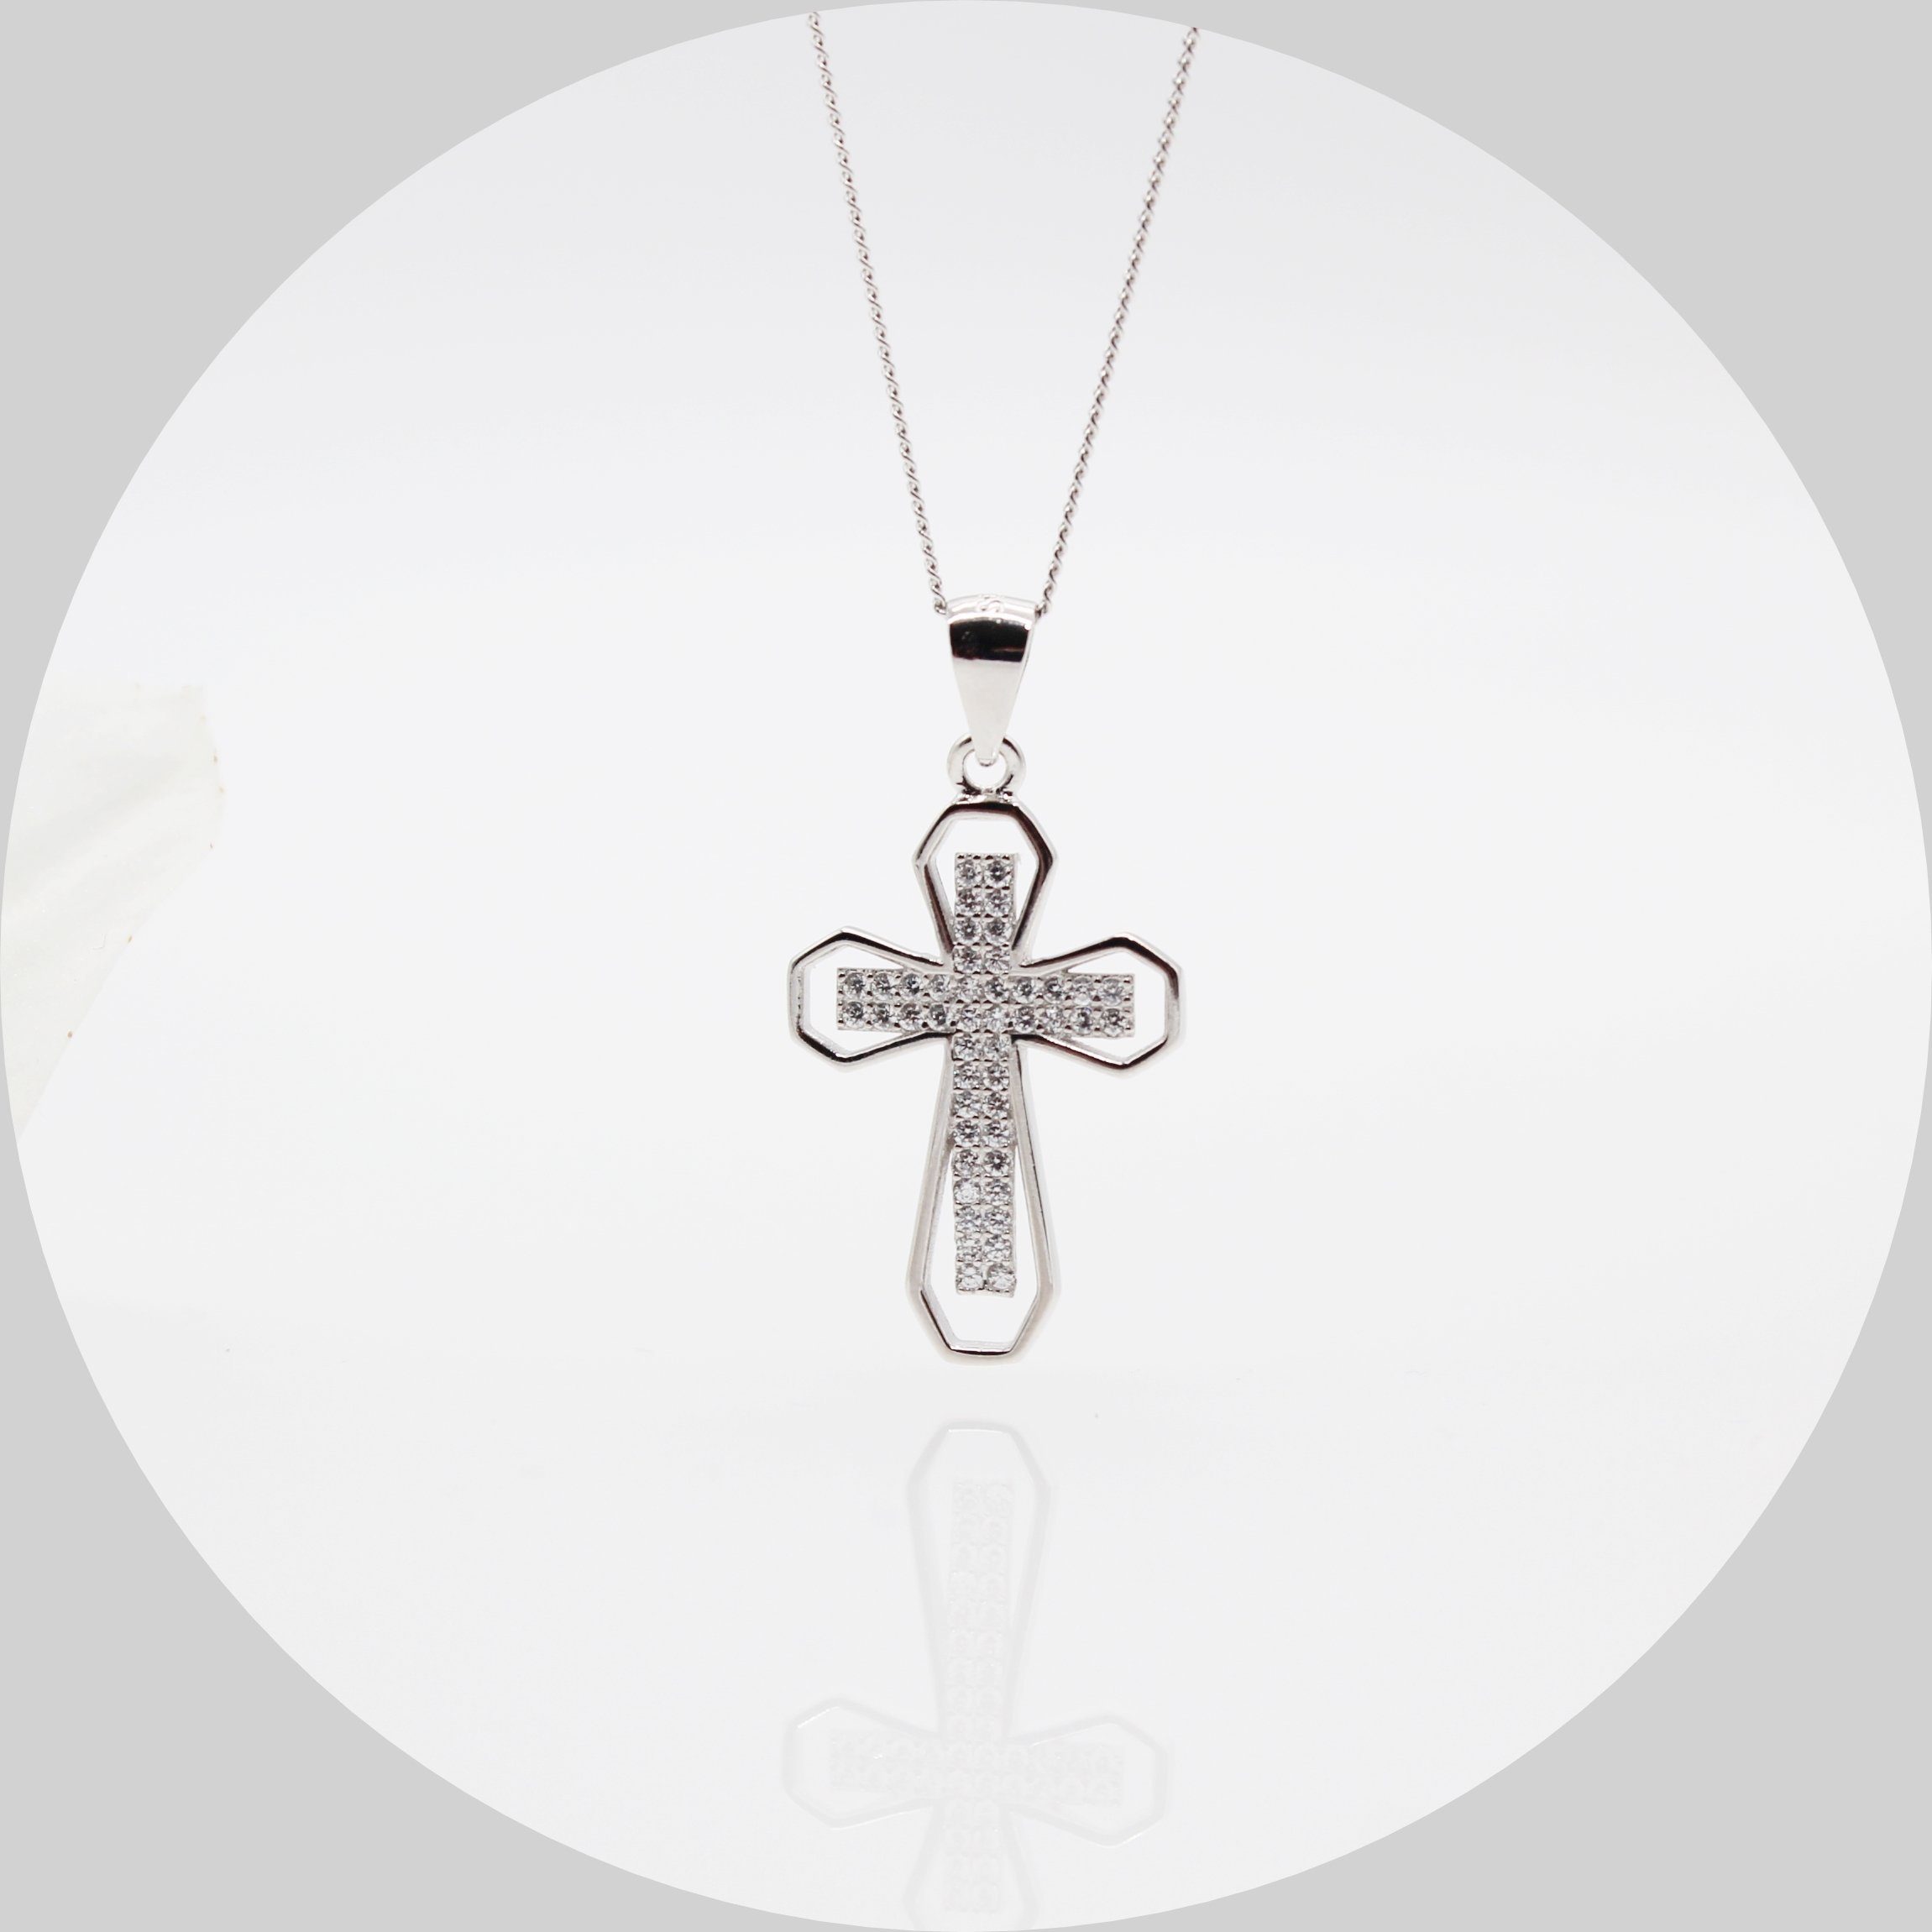 ELLAWIL Silberkette Damen Kette mit Kreuzanhänger Halskette Schmuck Kreuzkette (Kettenlänge 45 cm, Sterling Silber 925), inklusive Geschenkschachtel